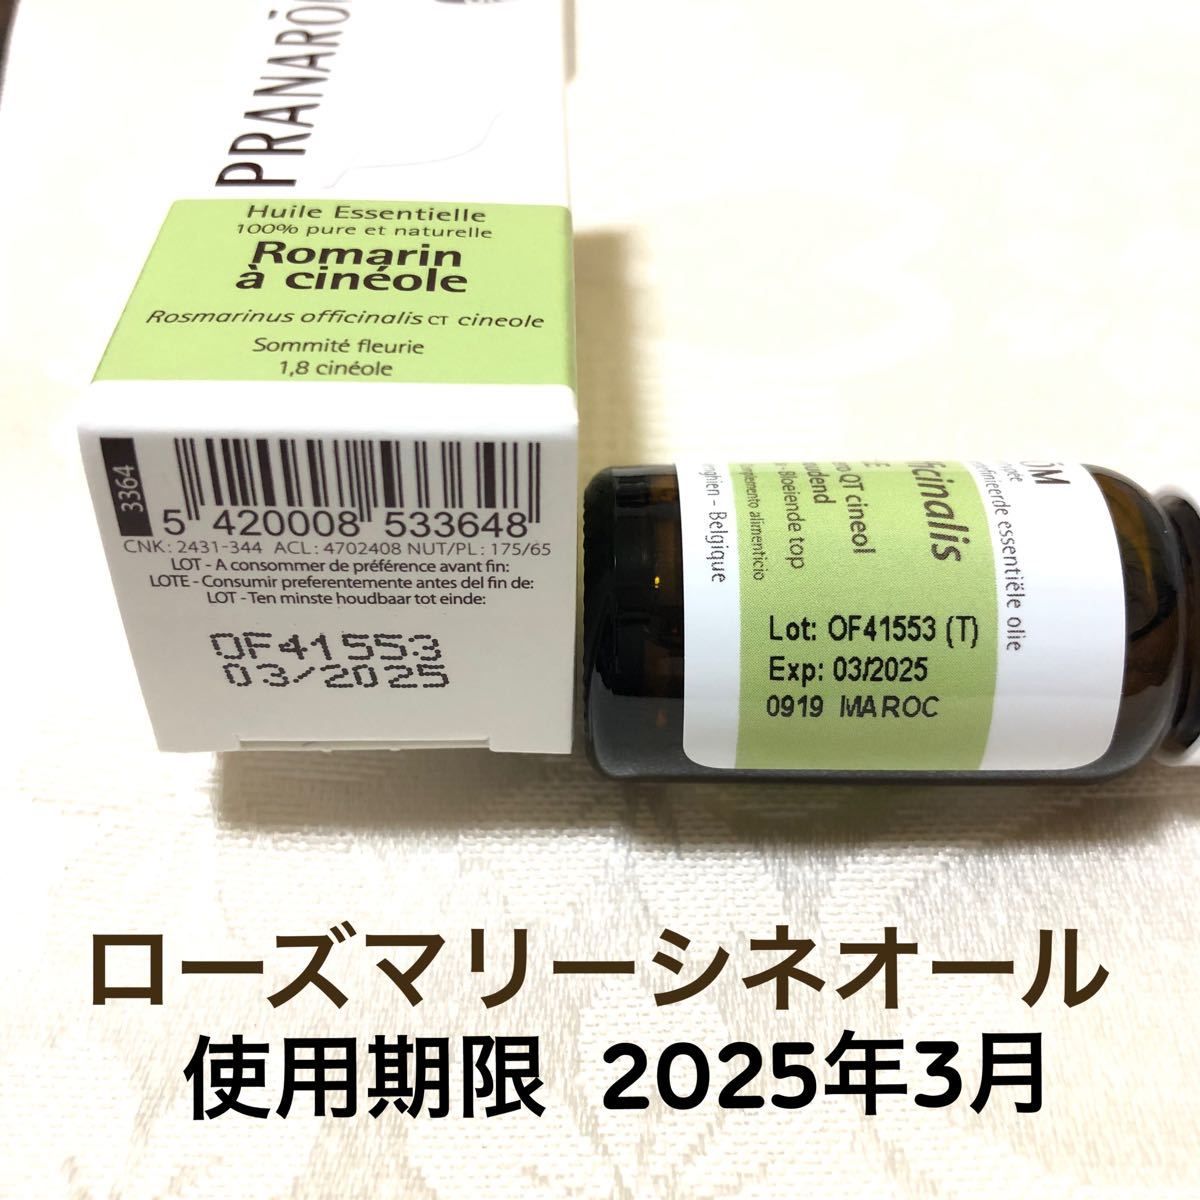 【ローズマリーシネオール BIO 】10ml プラナロム 精油